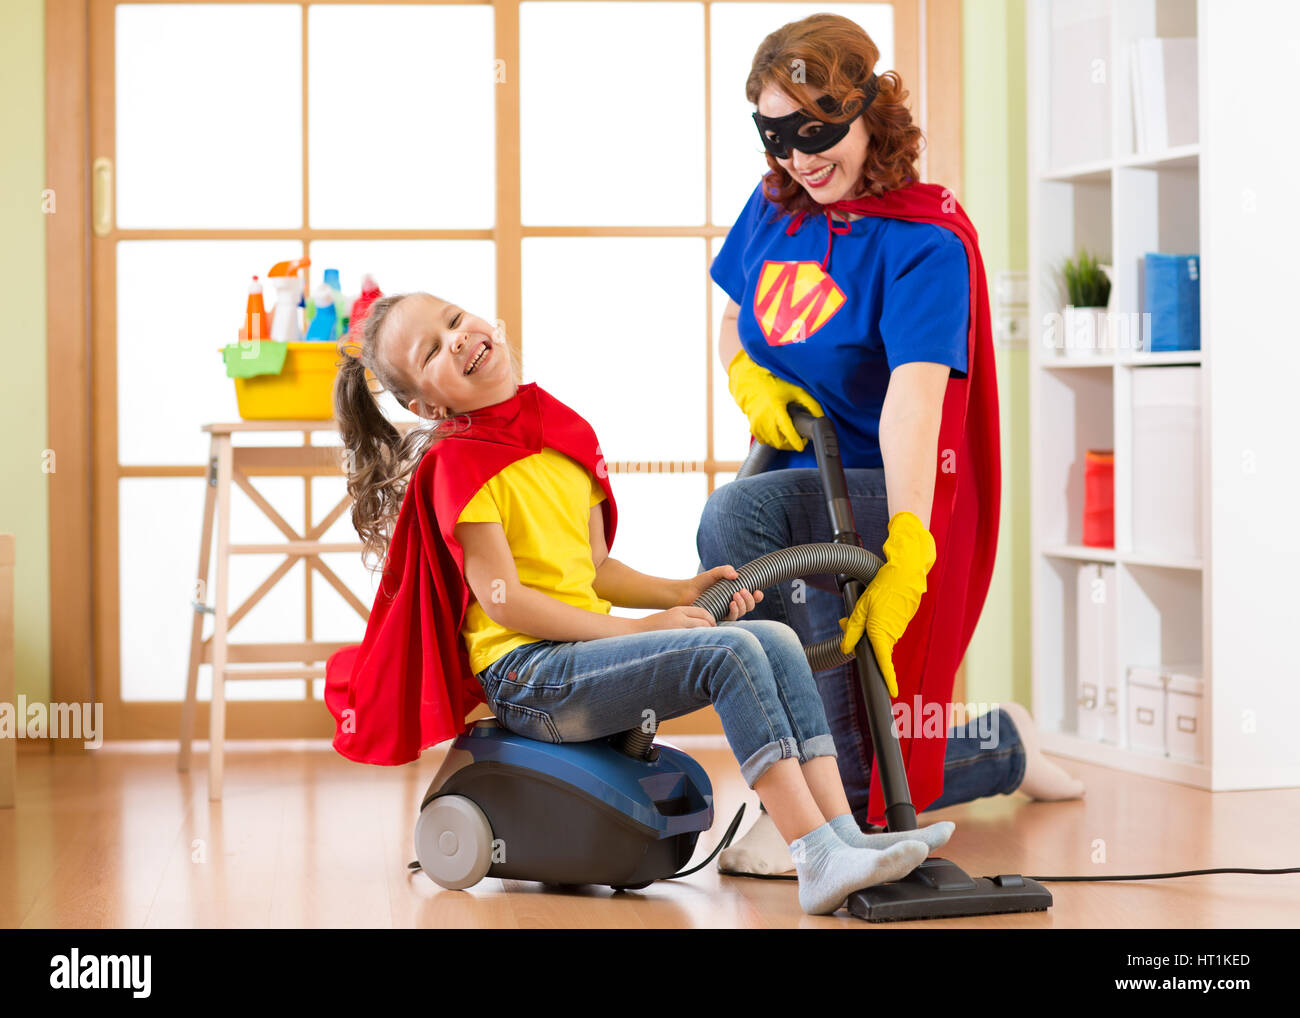 Superheros kid ragazza e la sua madre che fa servizio lavanderia insieme nel soggiorno. Famiglia - di mezza età della donna e bambino figlia hanno un divertimento mentre aspirapolvere Foto Stock